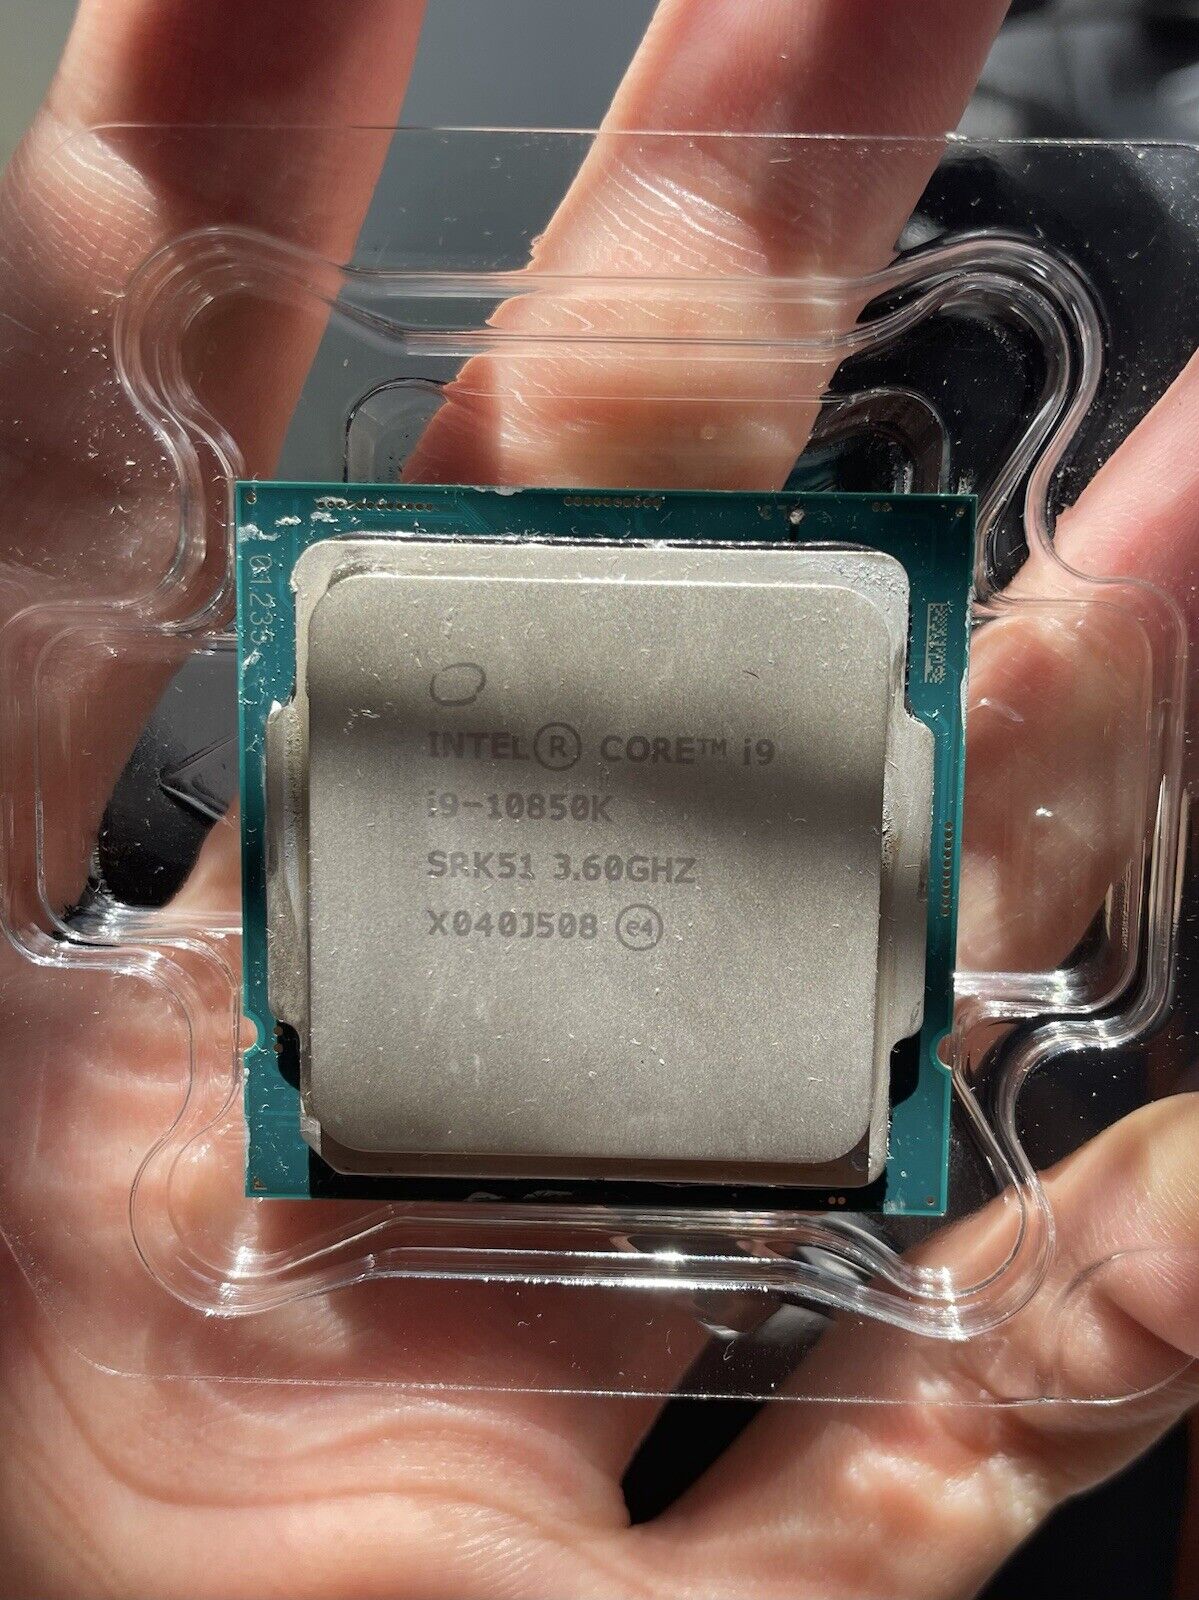 Intel Core i9-10850K 10-Cores 3.6GHz Socket LGA1200 CPU Processor 20MB Cache